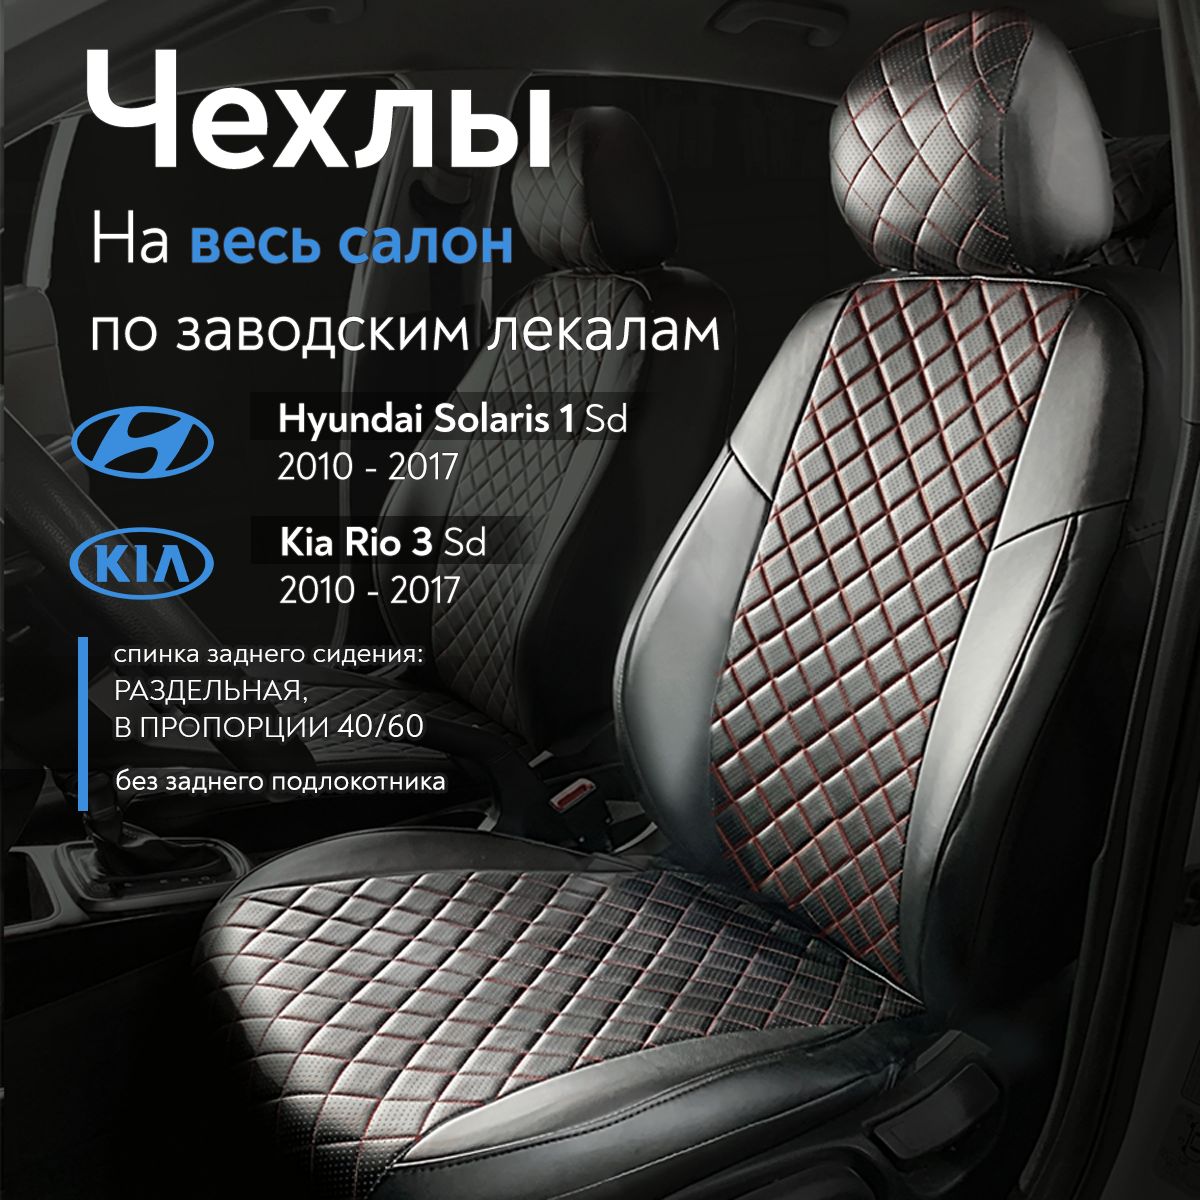 Снятие и установка заднего сиденья Hyundai Solaris